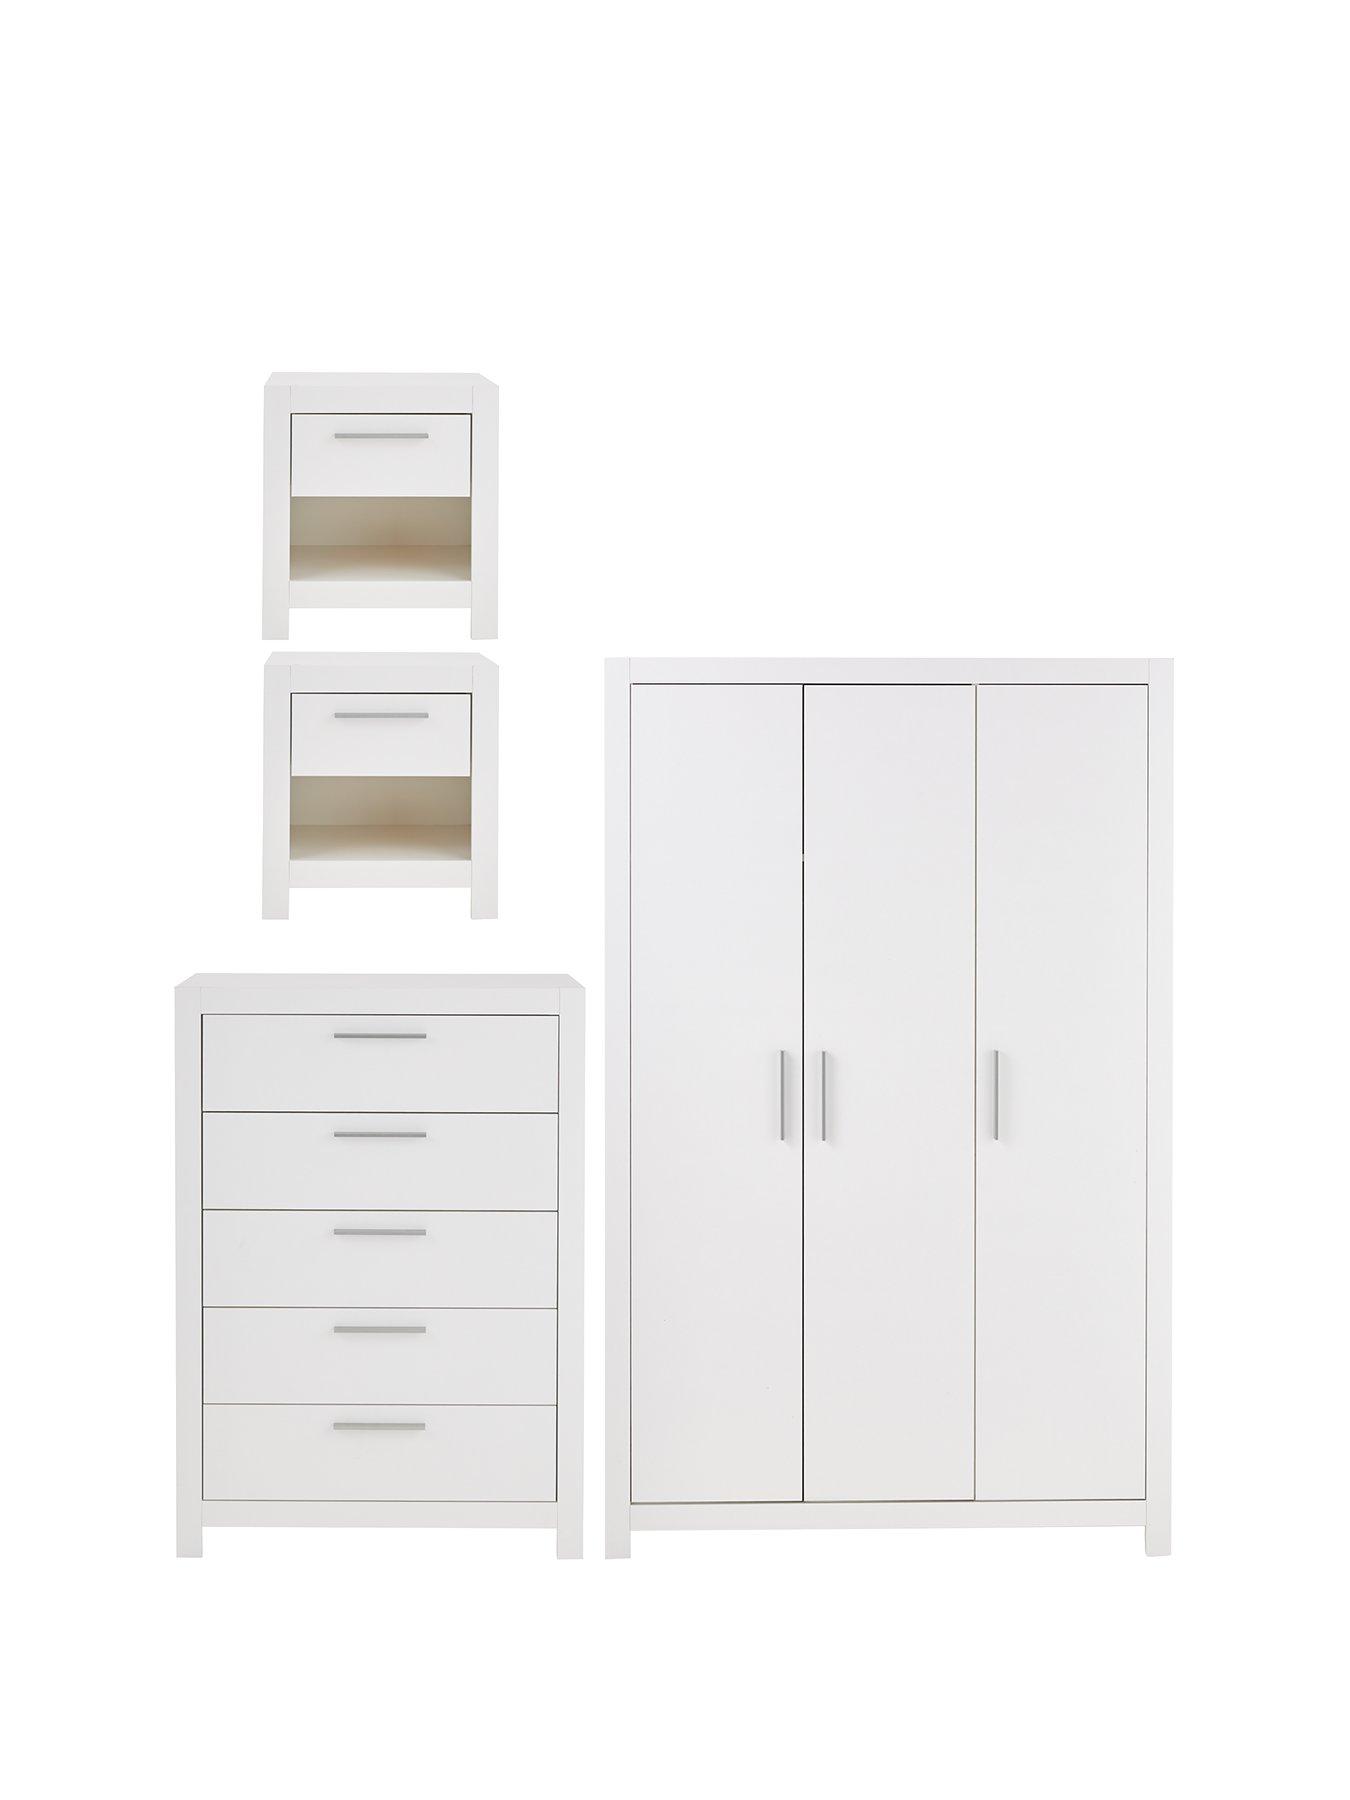 Details about   Dresser Bedside 5 Drawers Furniture Storage Tower Unit for Bedroom Office 